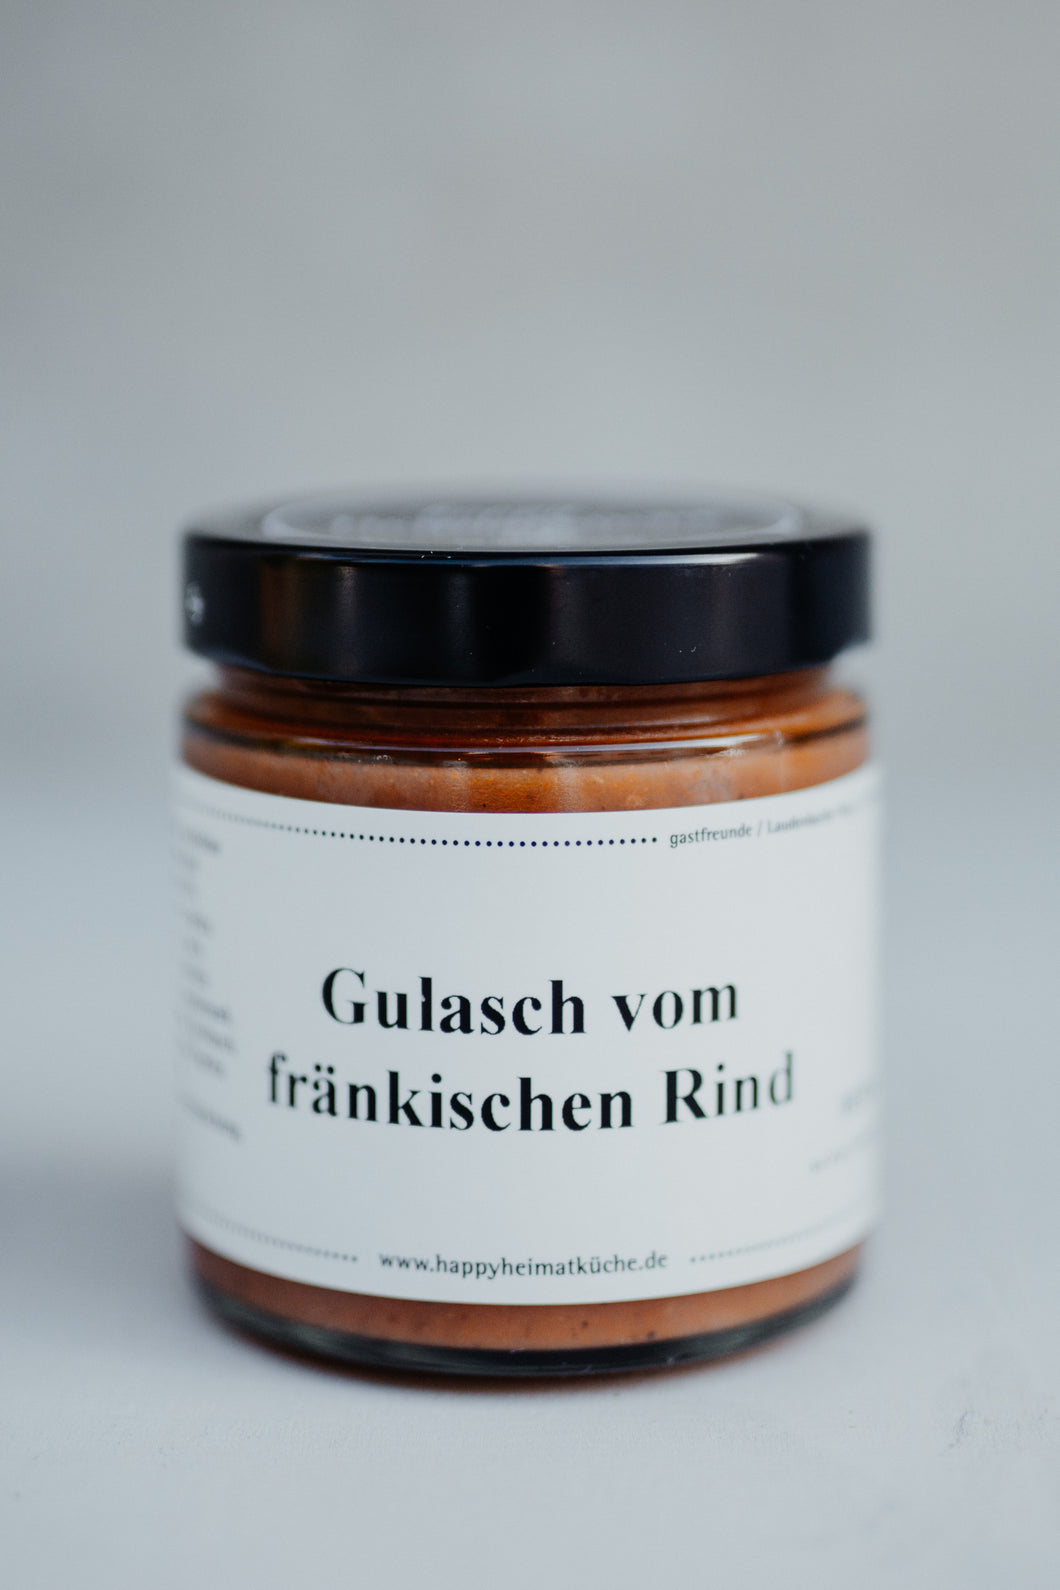 Gulasch vom fränkischen Rind